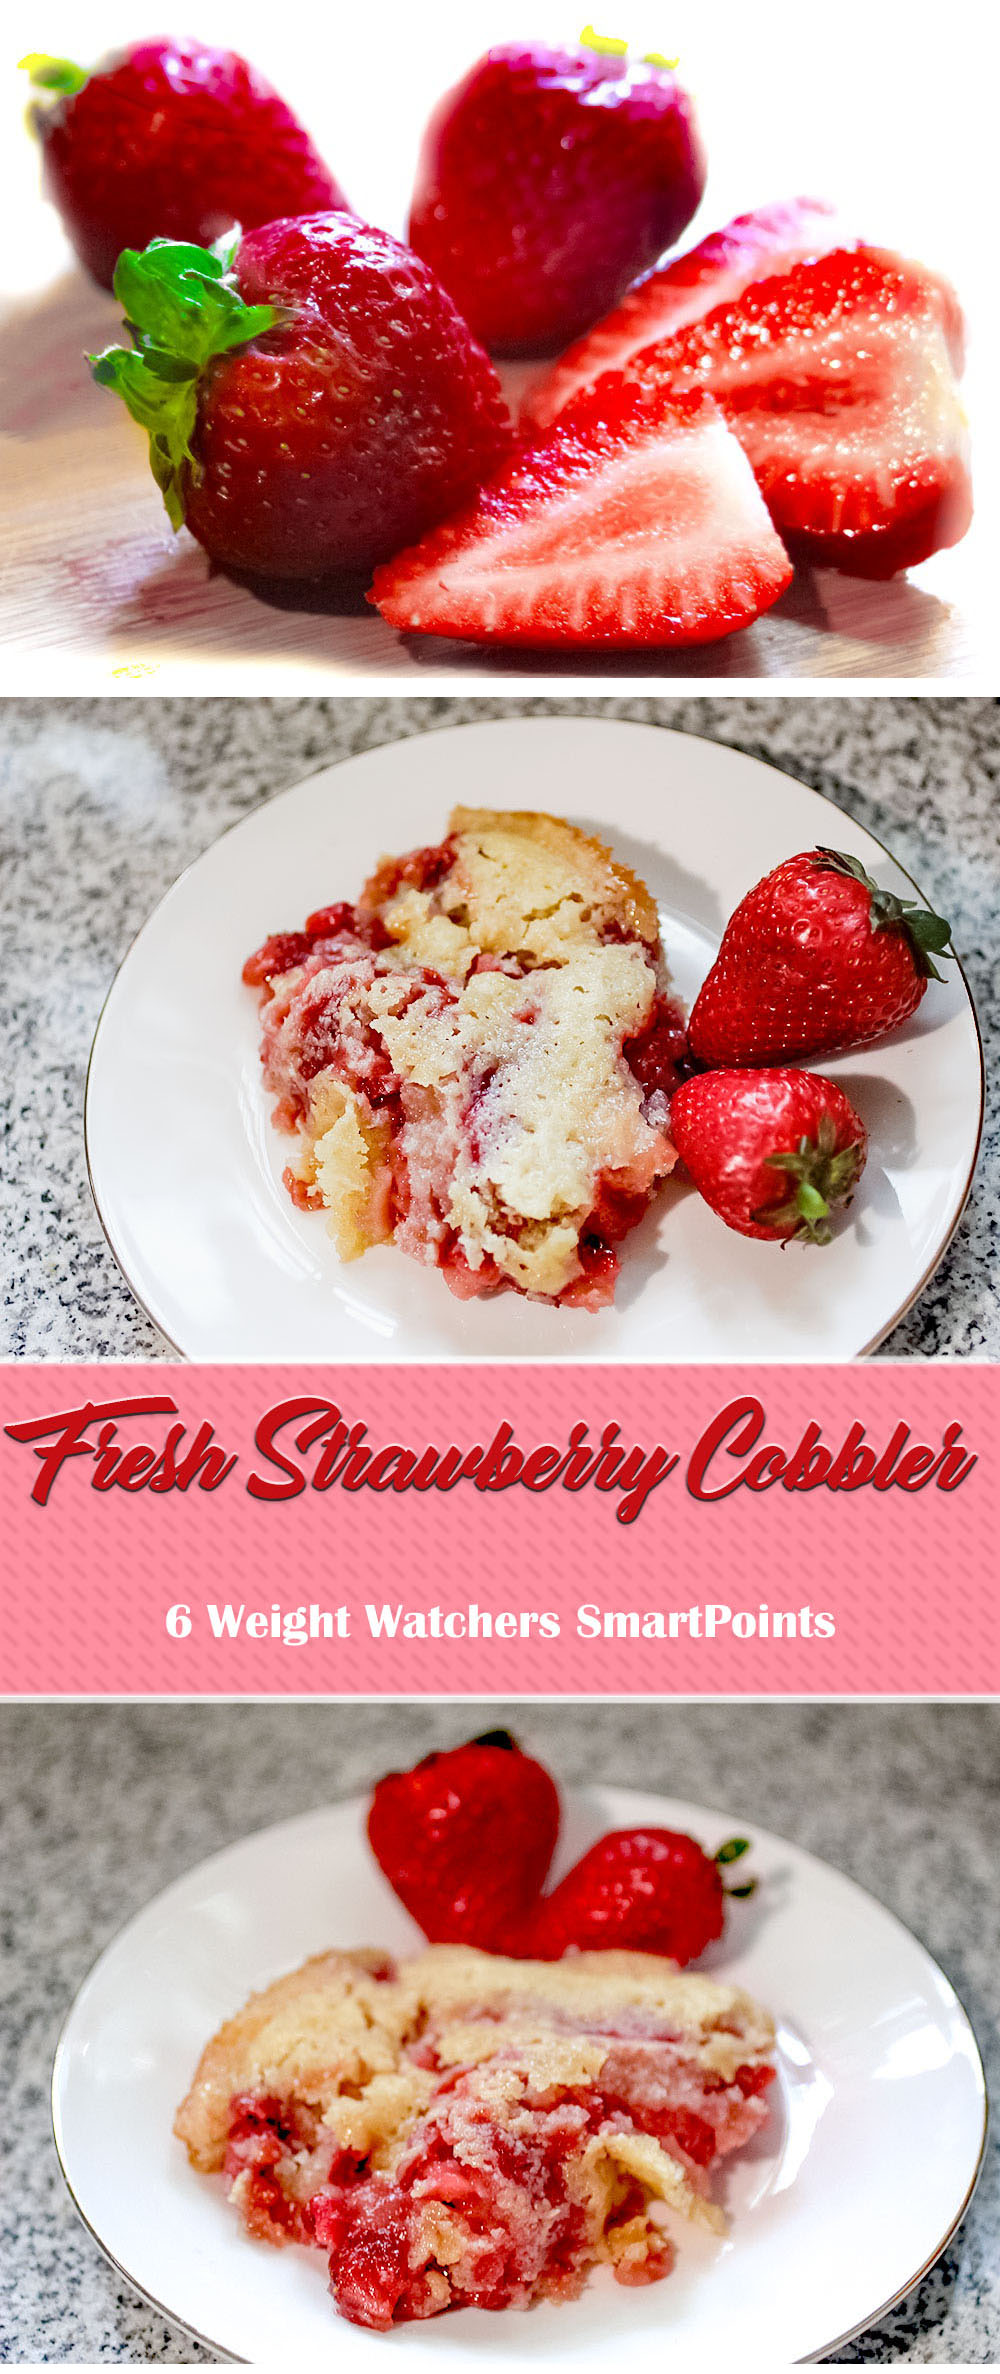 fresh strawberry cobbler - 6 weight watchers smartpoints